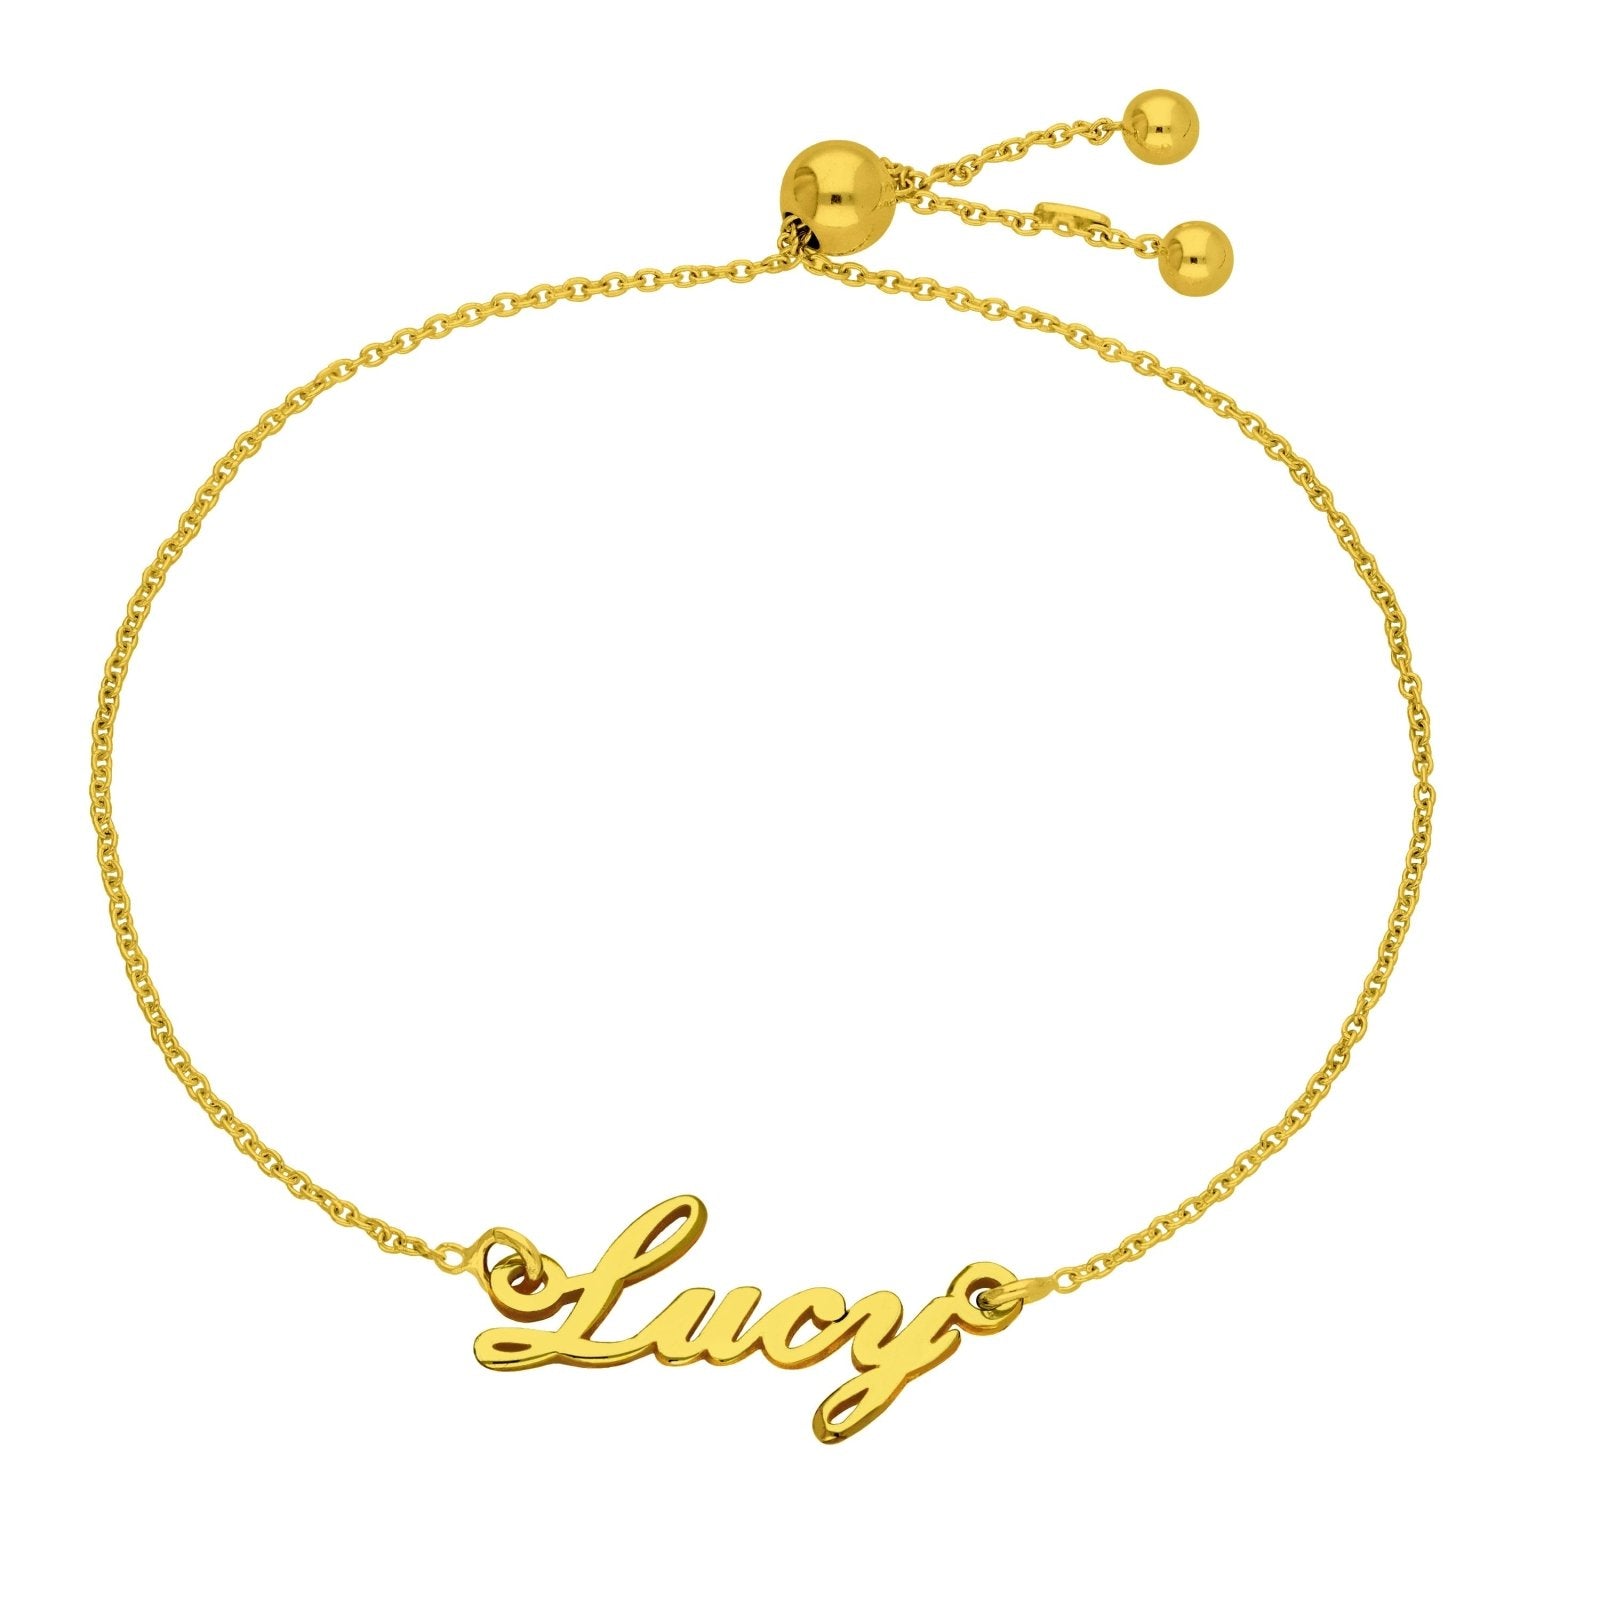 Bespoke Gold Plated Sterling Silver Name Script Adjustable Bracelet - jewellerybox